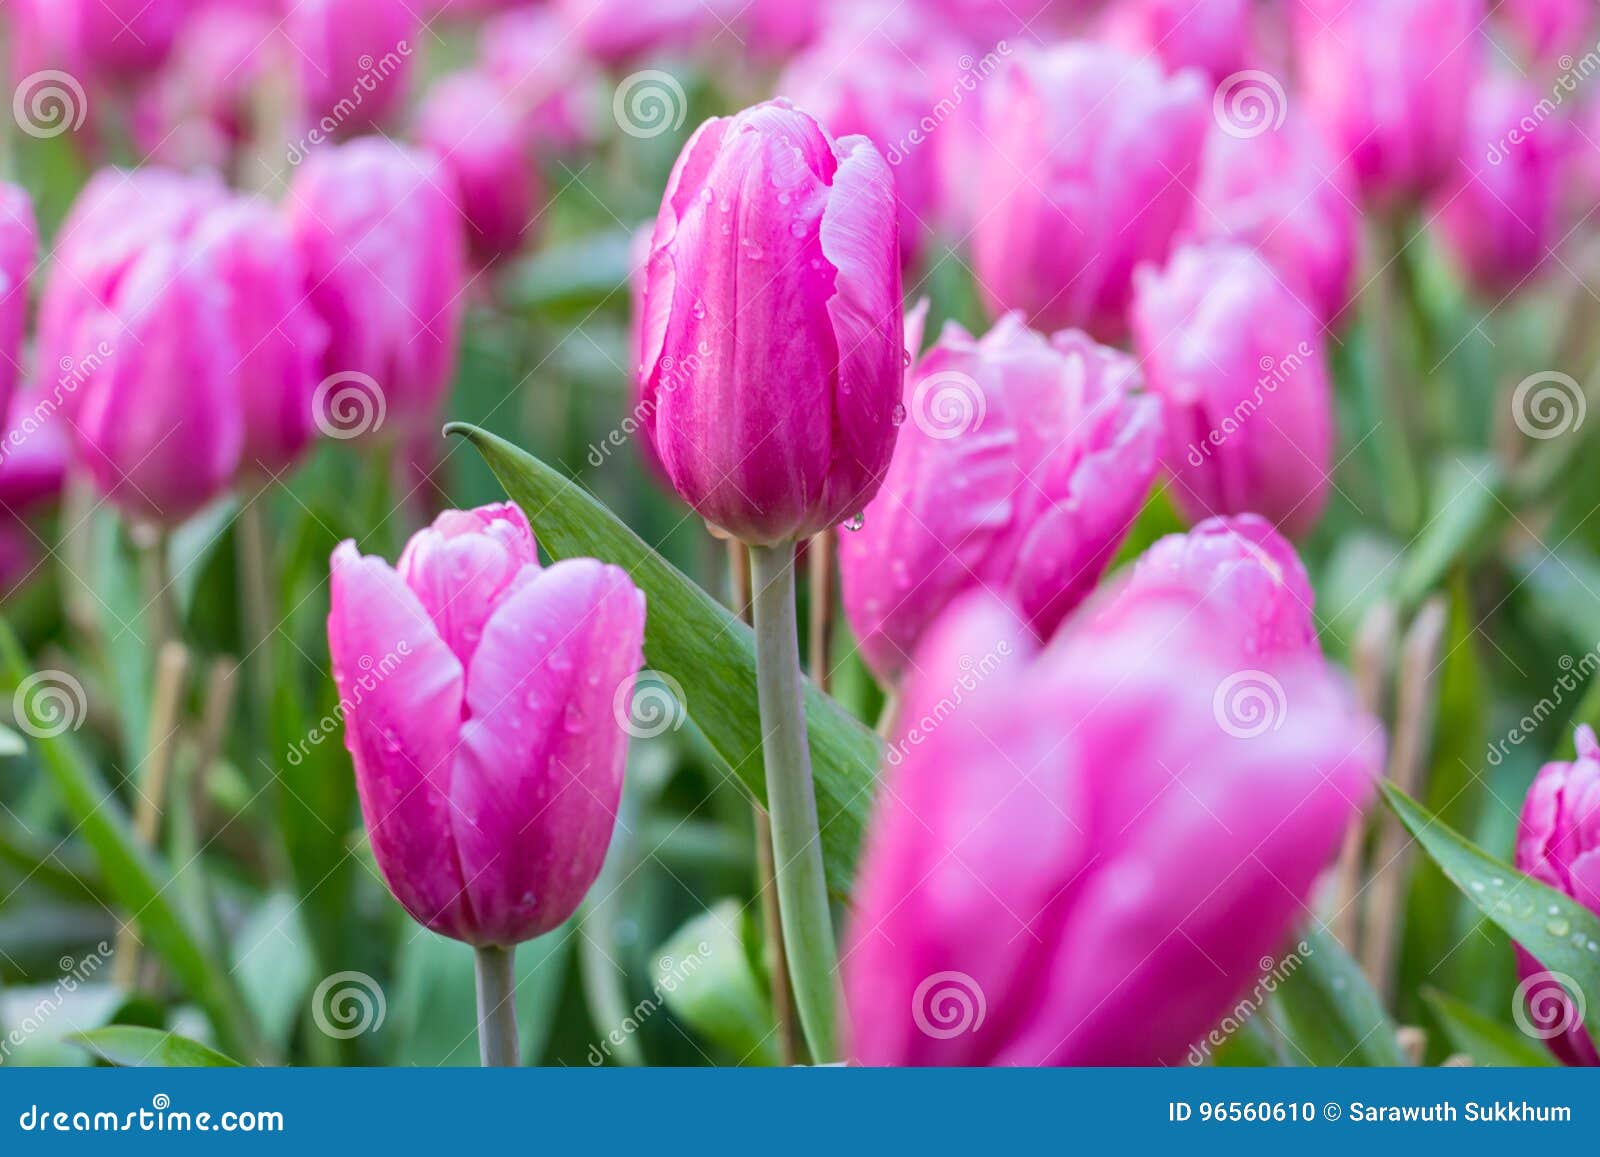 Floresça tulips. Fundo das tulipas da flor Opinião bonita tulipas vermelhas sob a paisagem da luz solar no meio da mola ou do verão